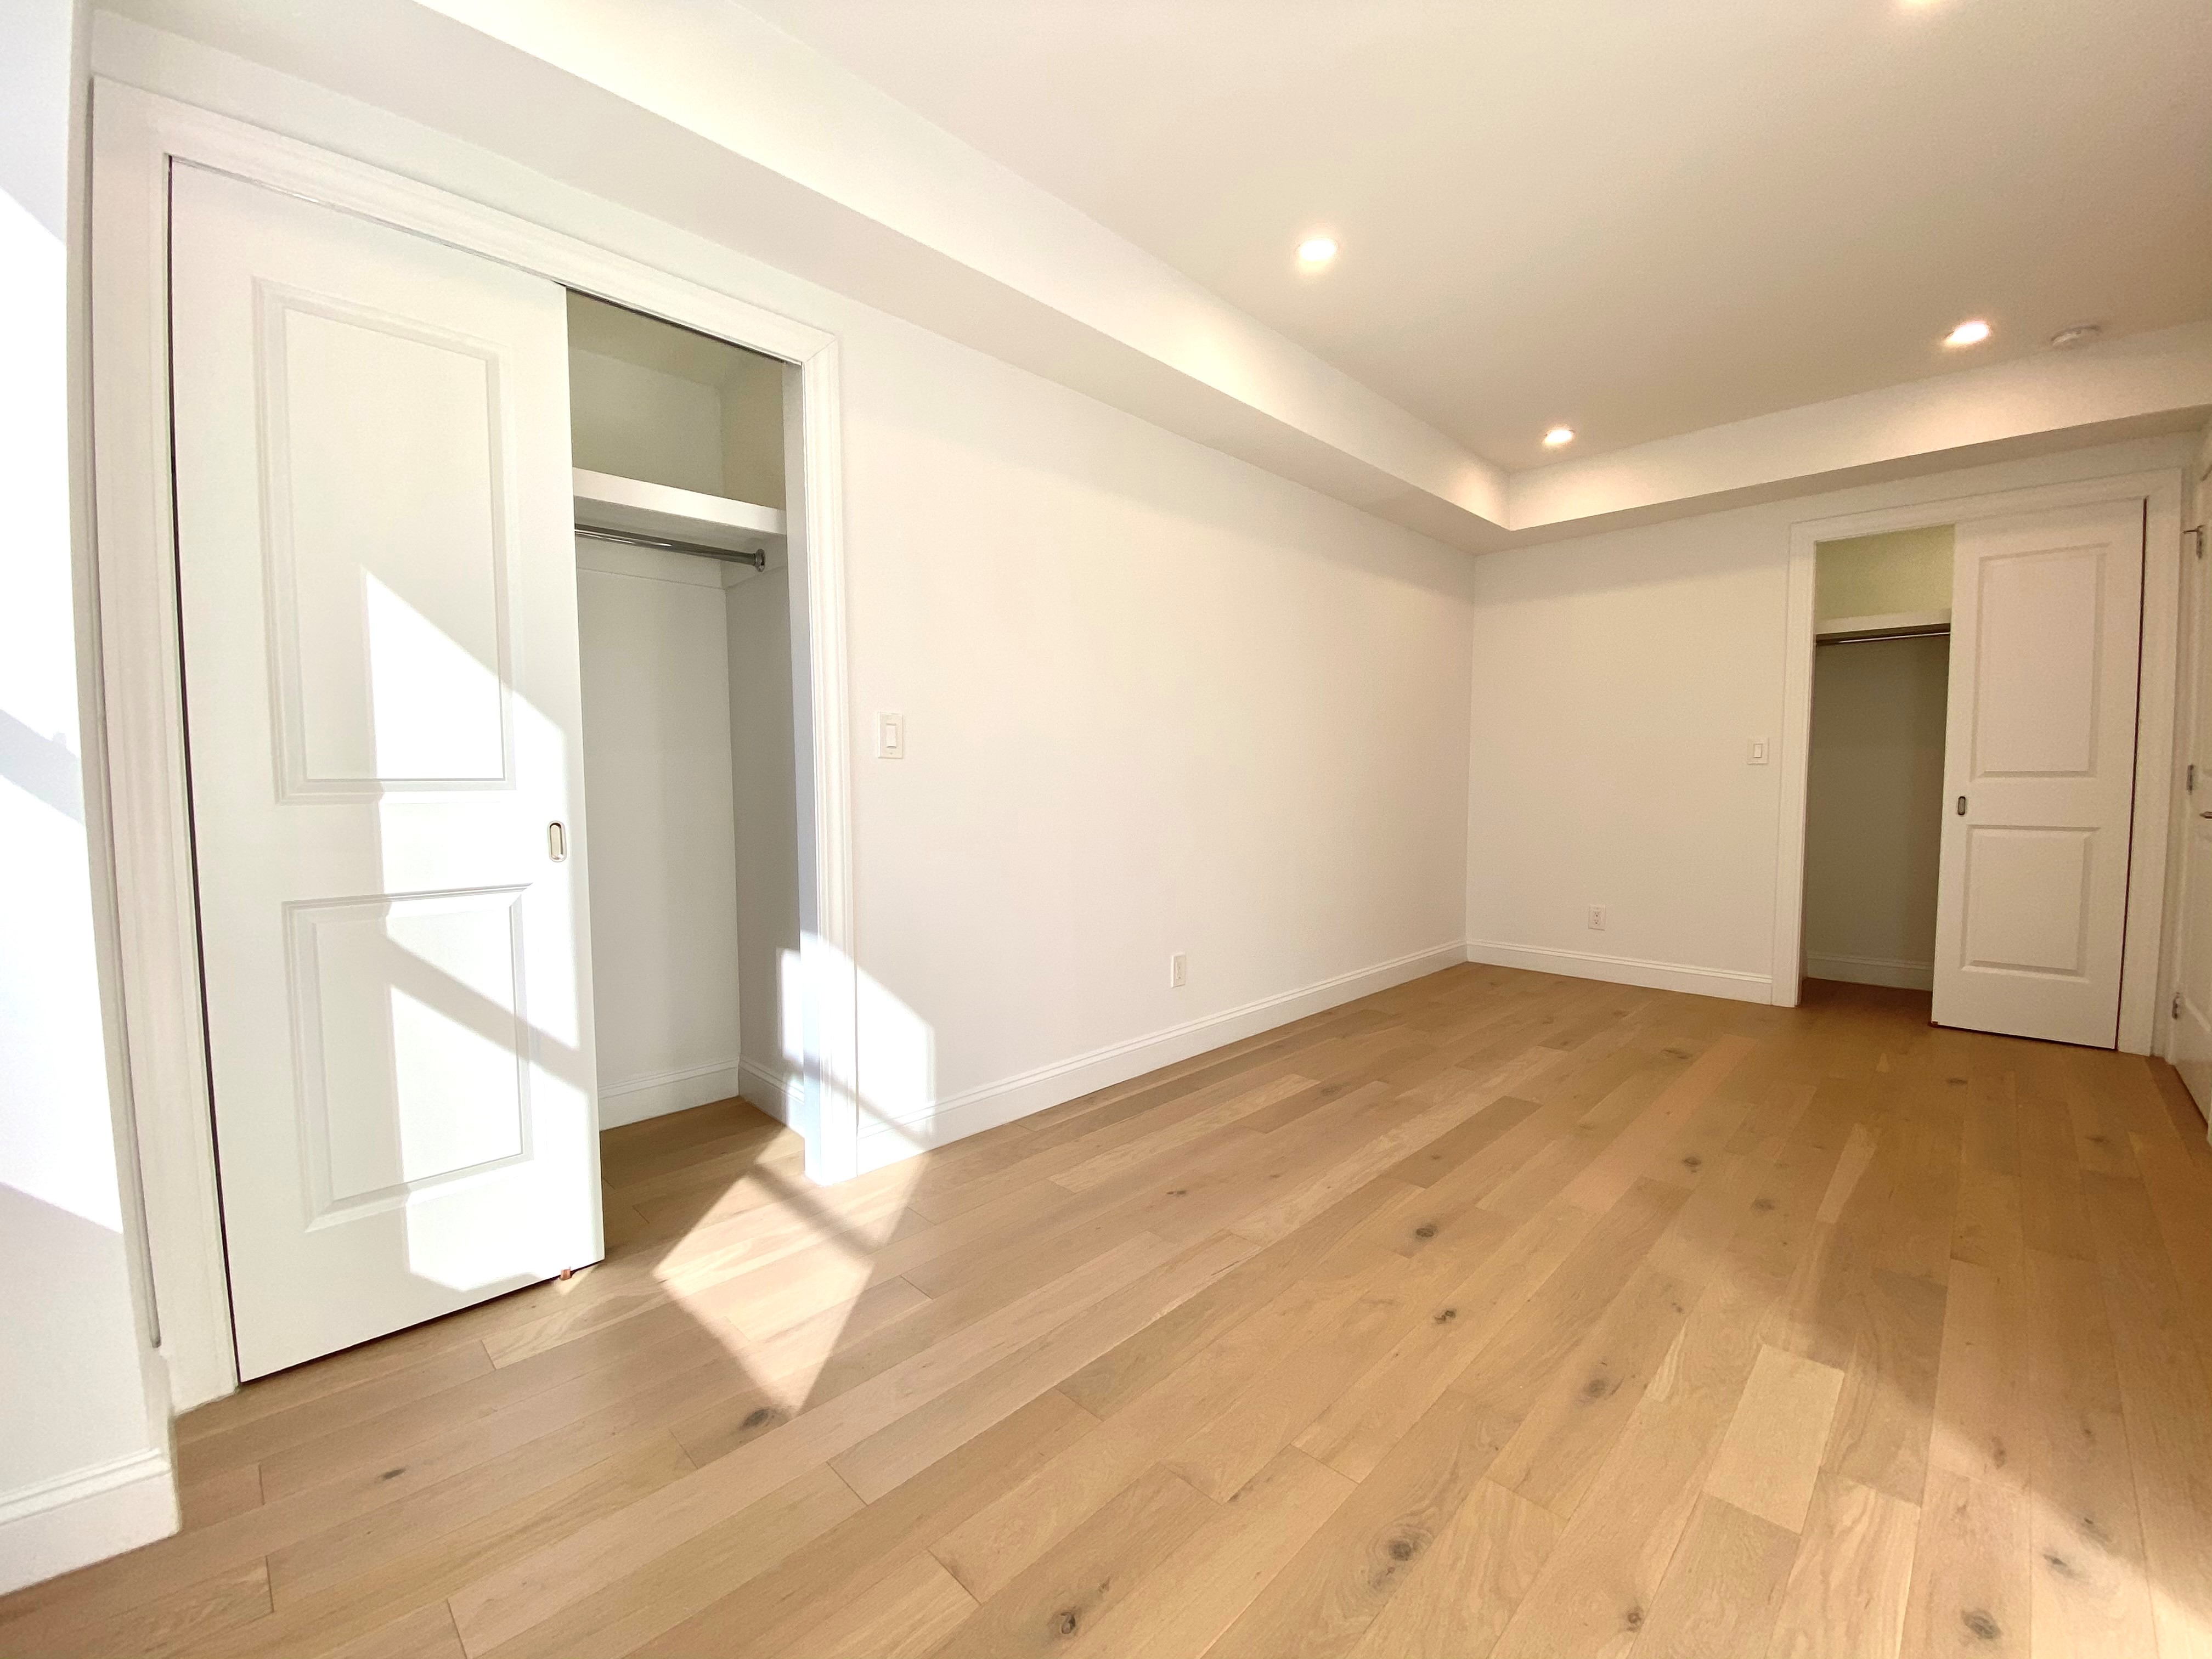 an empty room with wooden floor and door